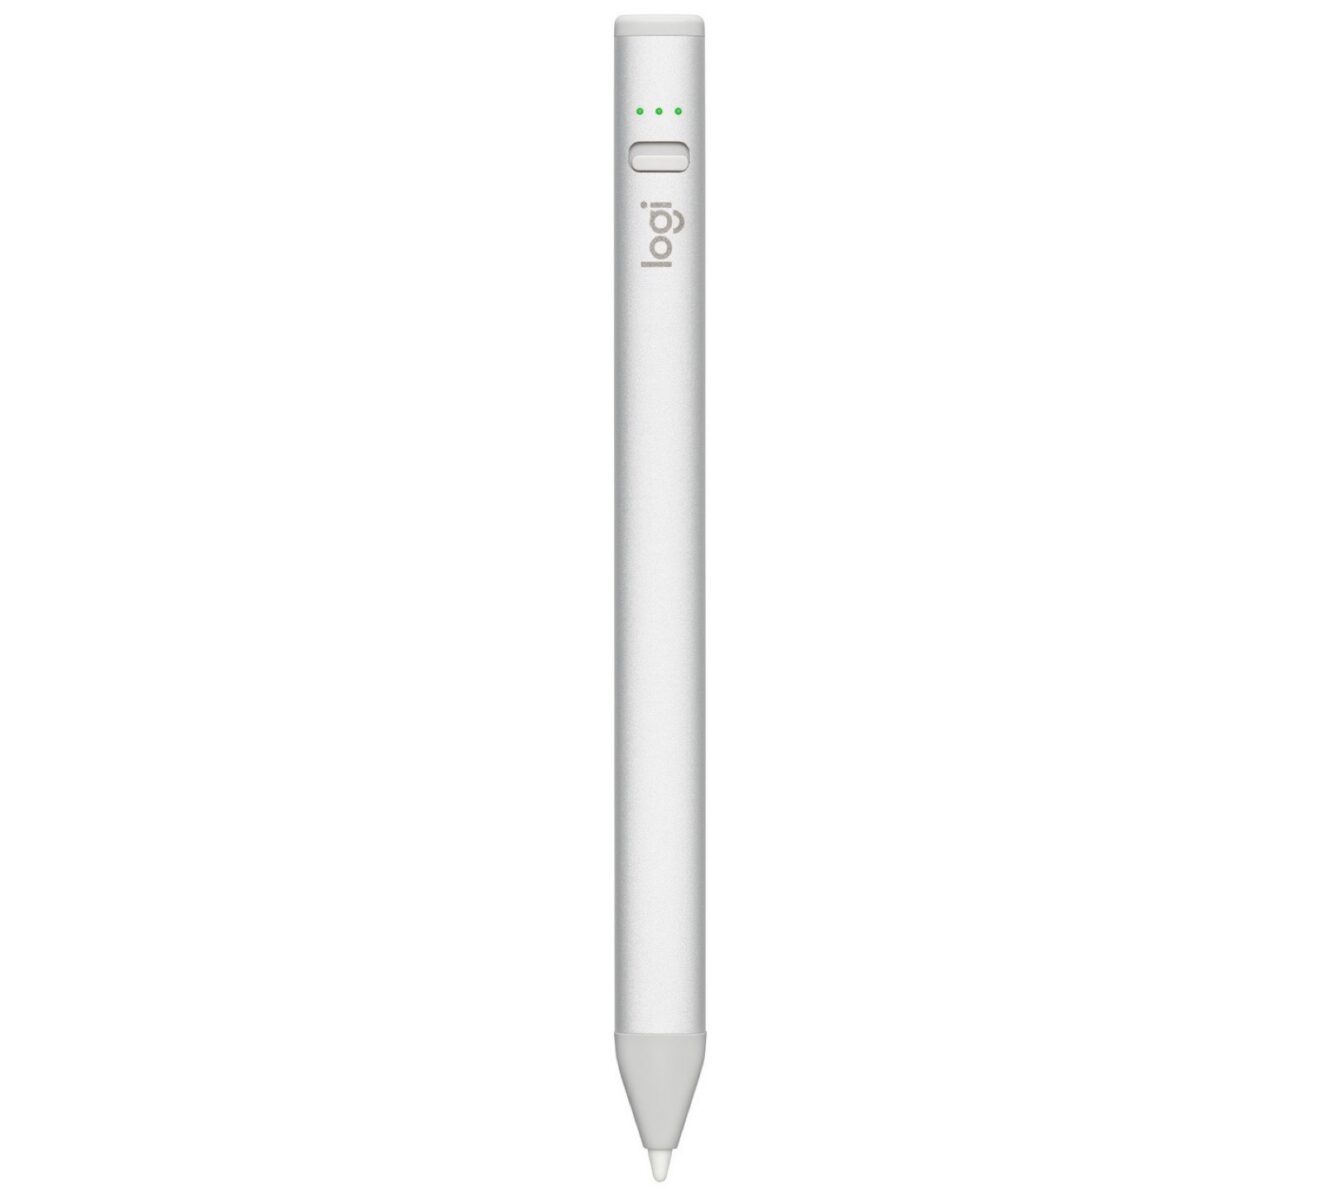 Logitech Crayon per iPad ora disponibile con porta USB-C